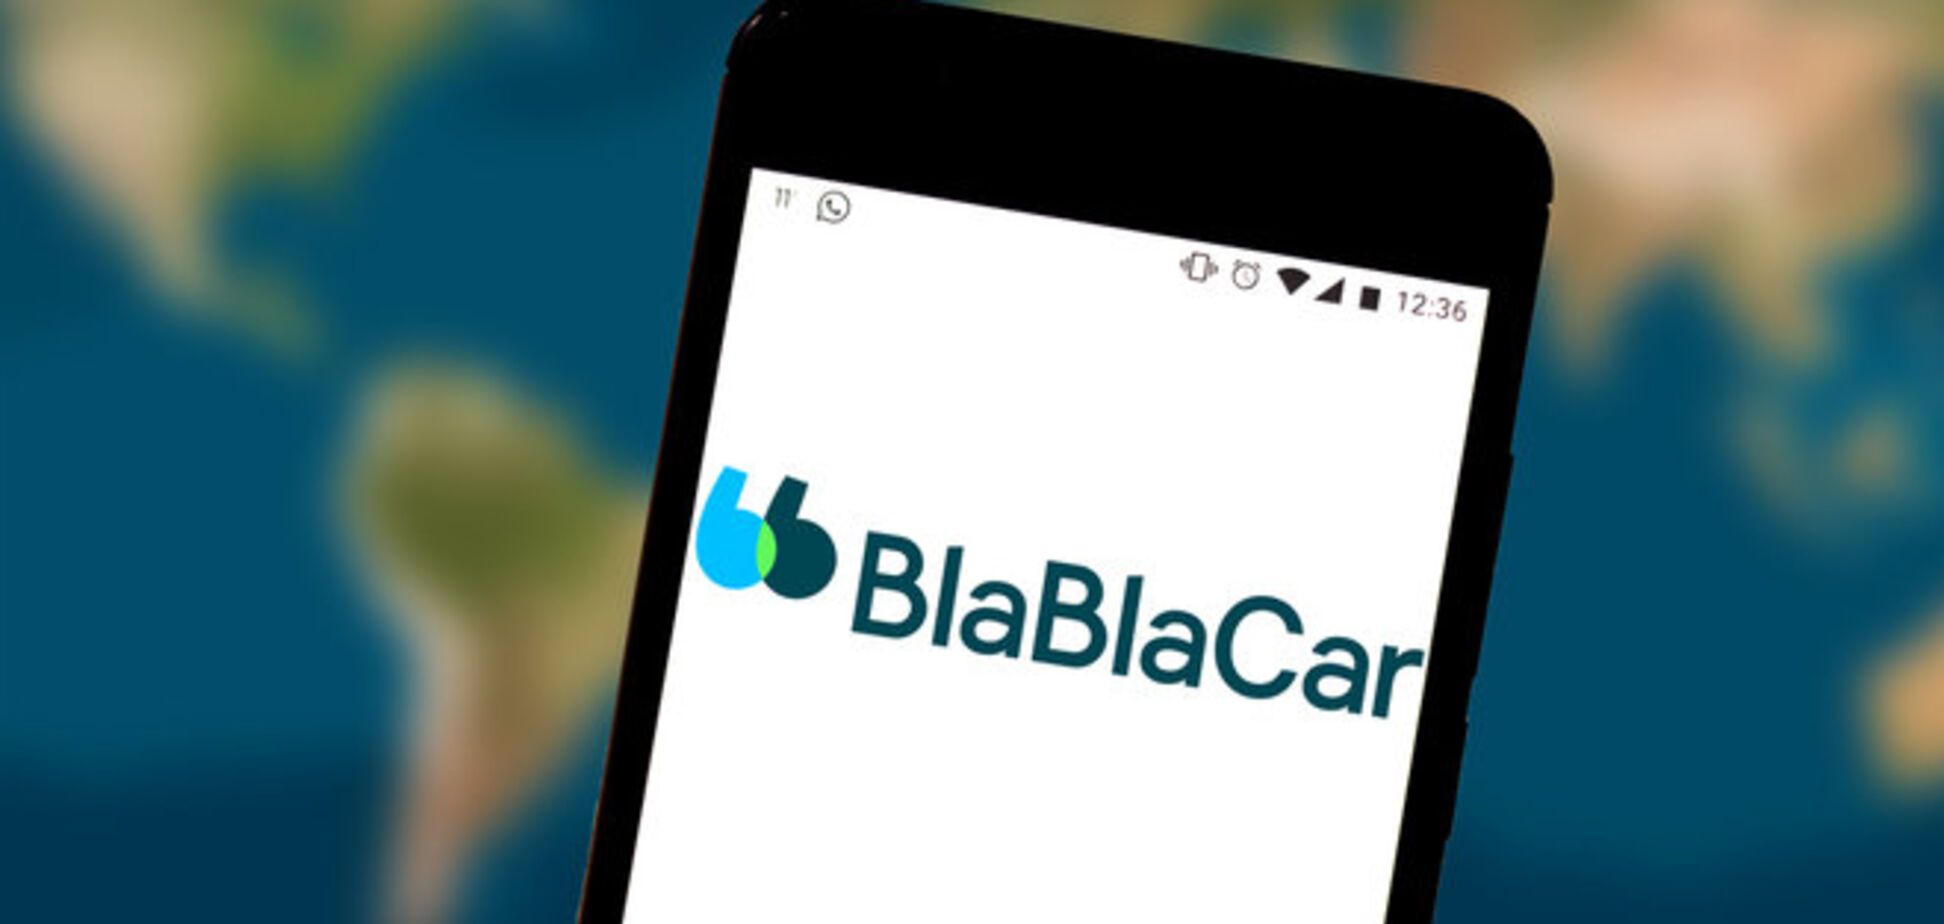 Сервис BlaBlaCar экстренно обратился к пользователям из-за вспышки коронавируса